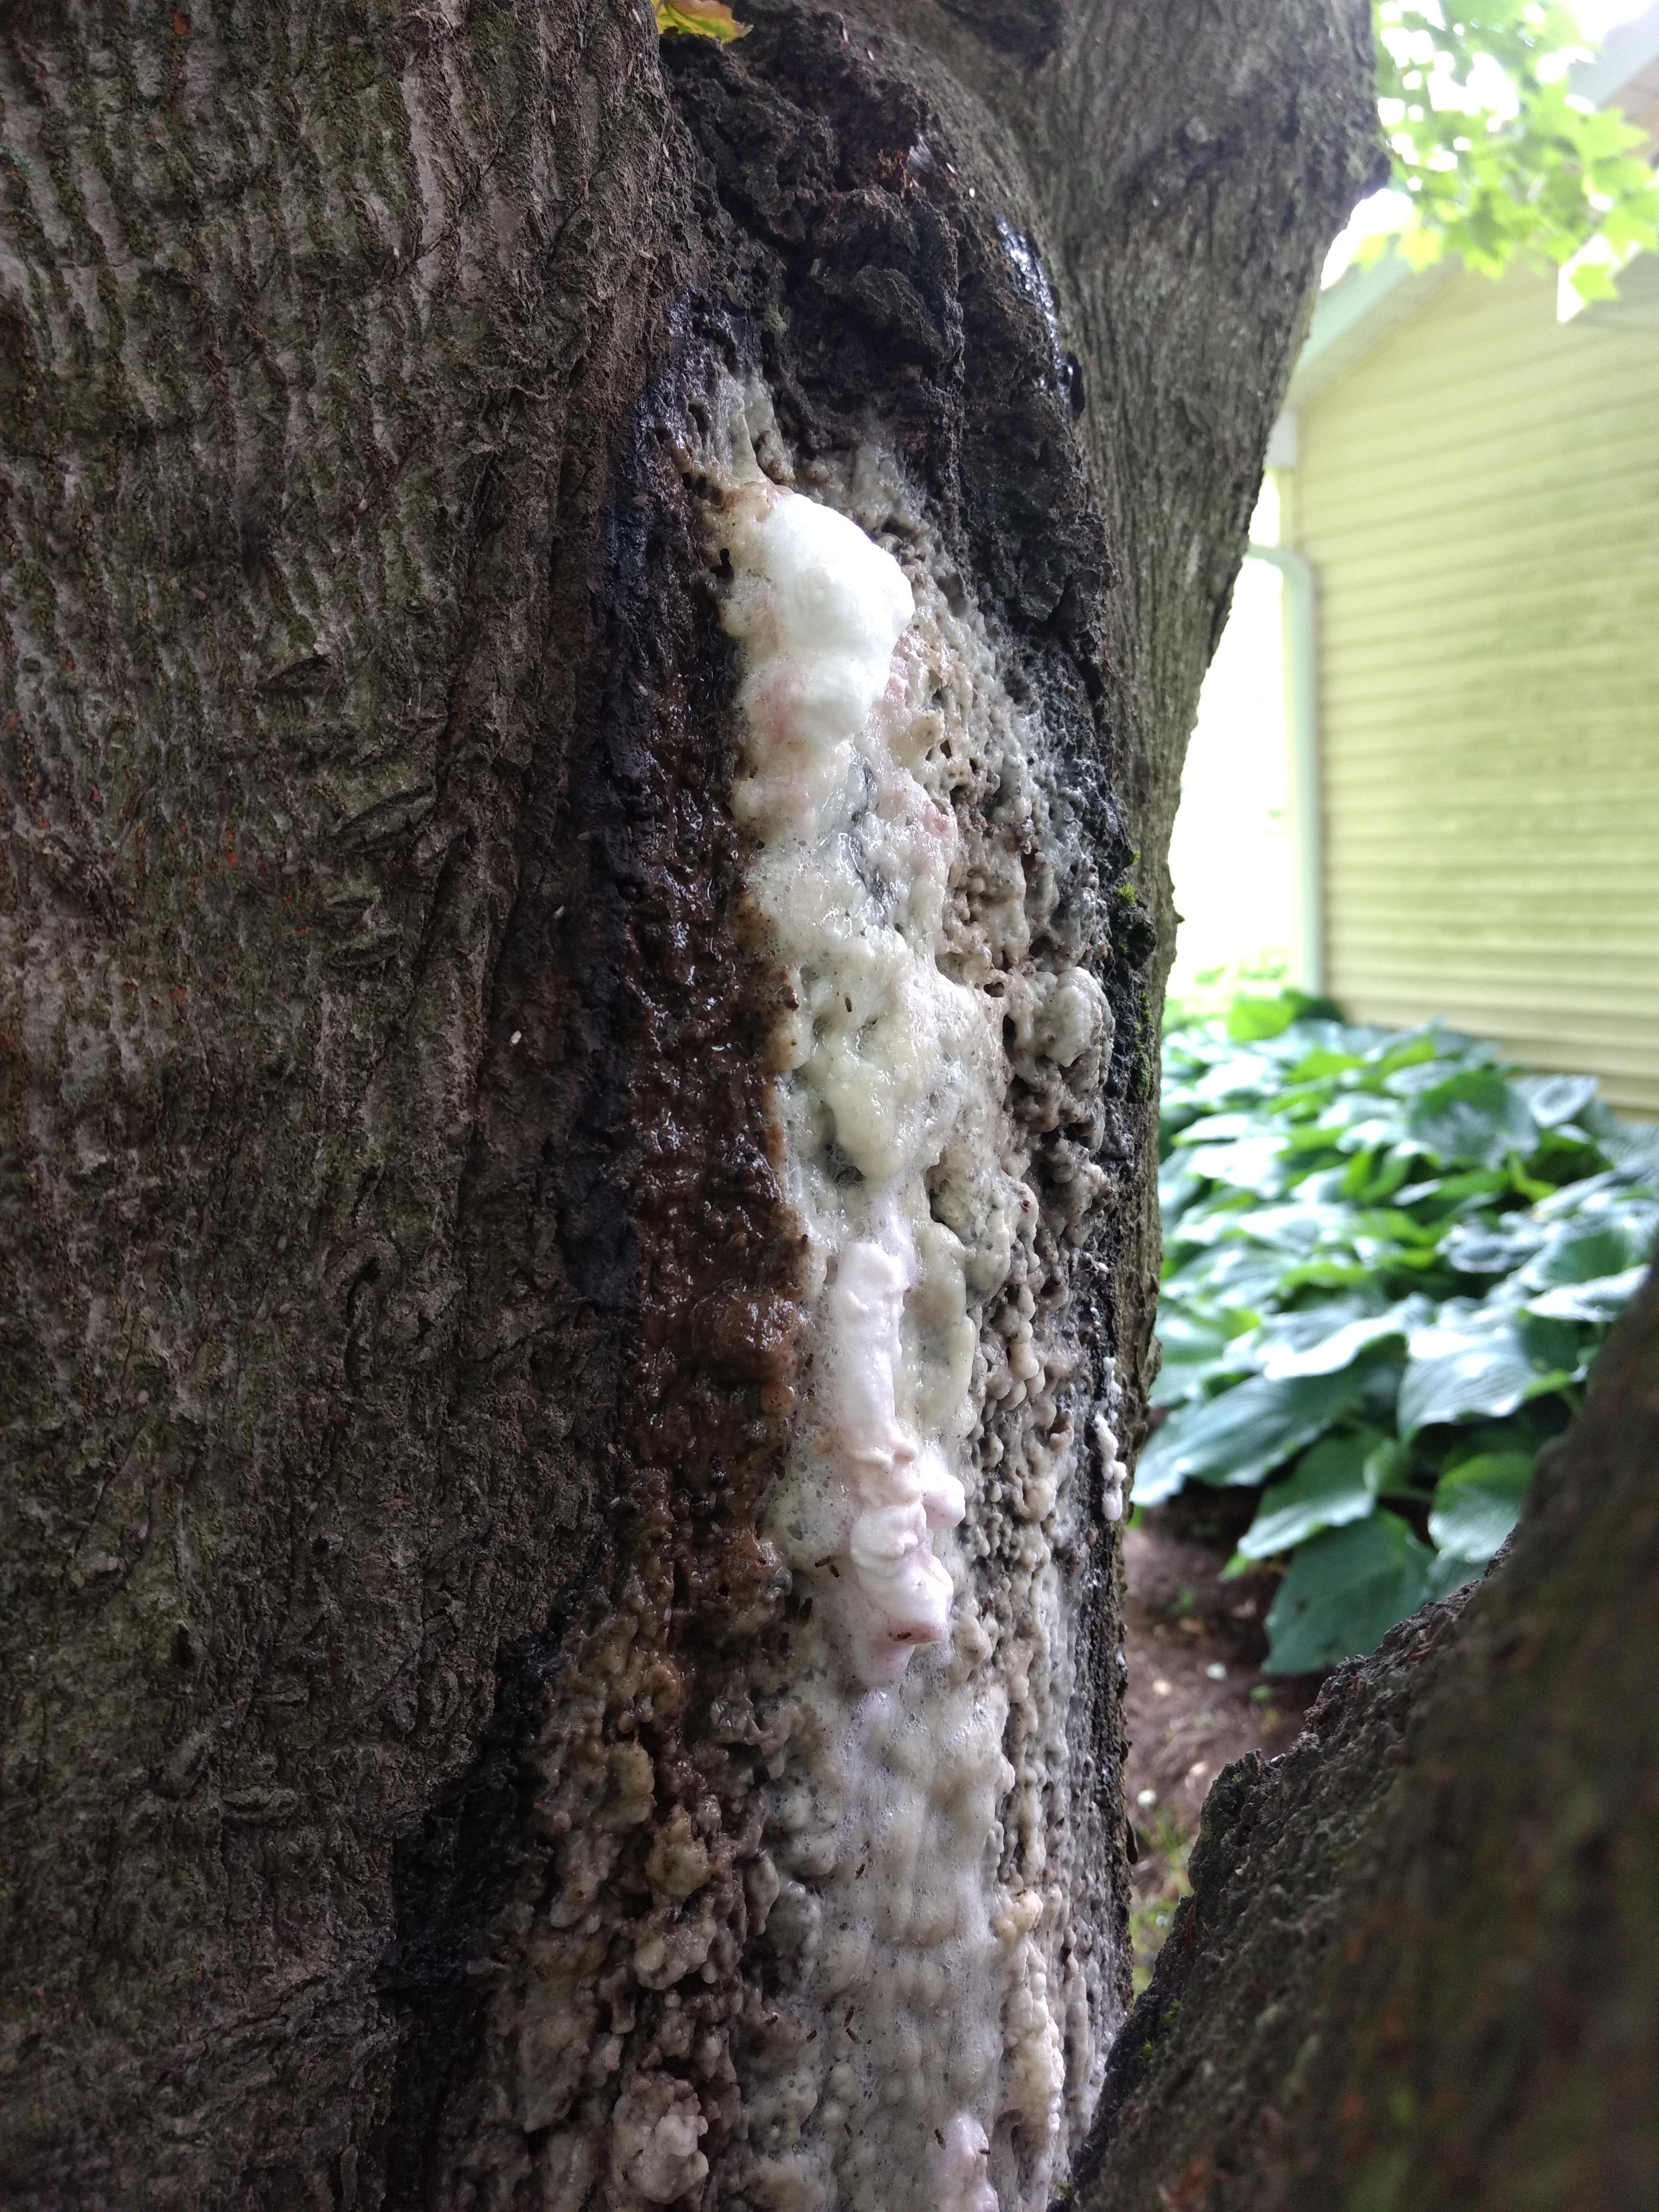 slime flux symptoms on tree trunk